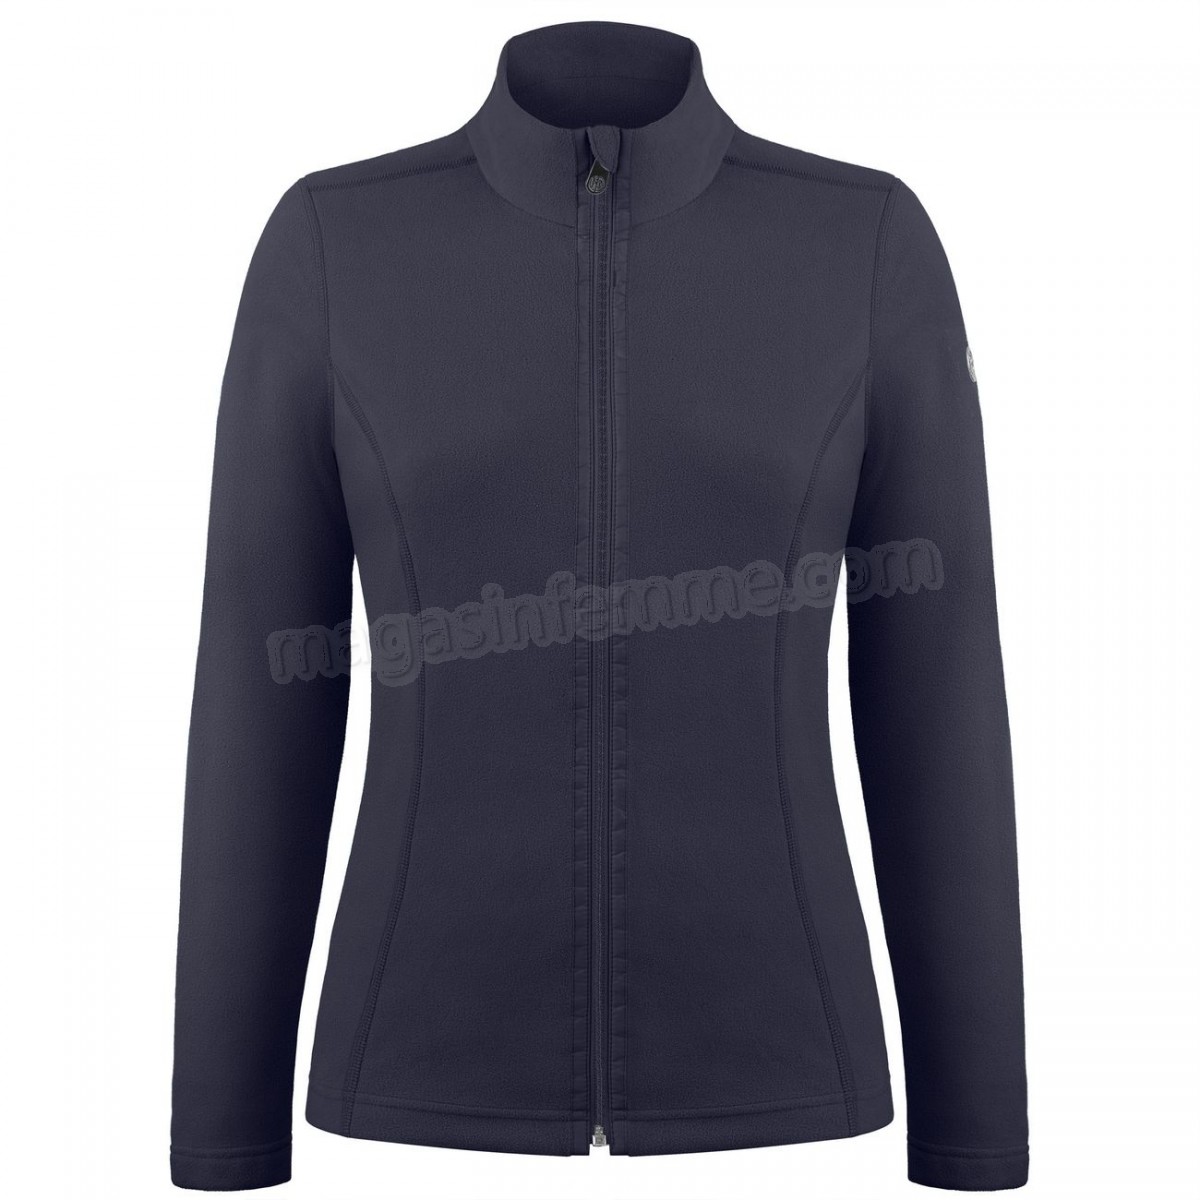 Poivre Blanc-Sports d'hiver femme POIVRE BLANC Veste Polaire Poivre Blanc Fleece Jacket 1500 Gothic Blue 4 Femme en solde - -1